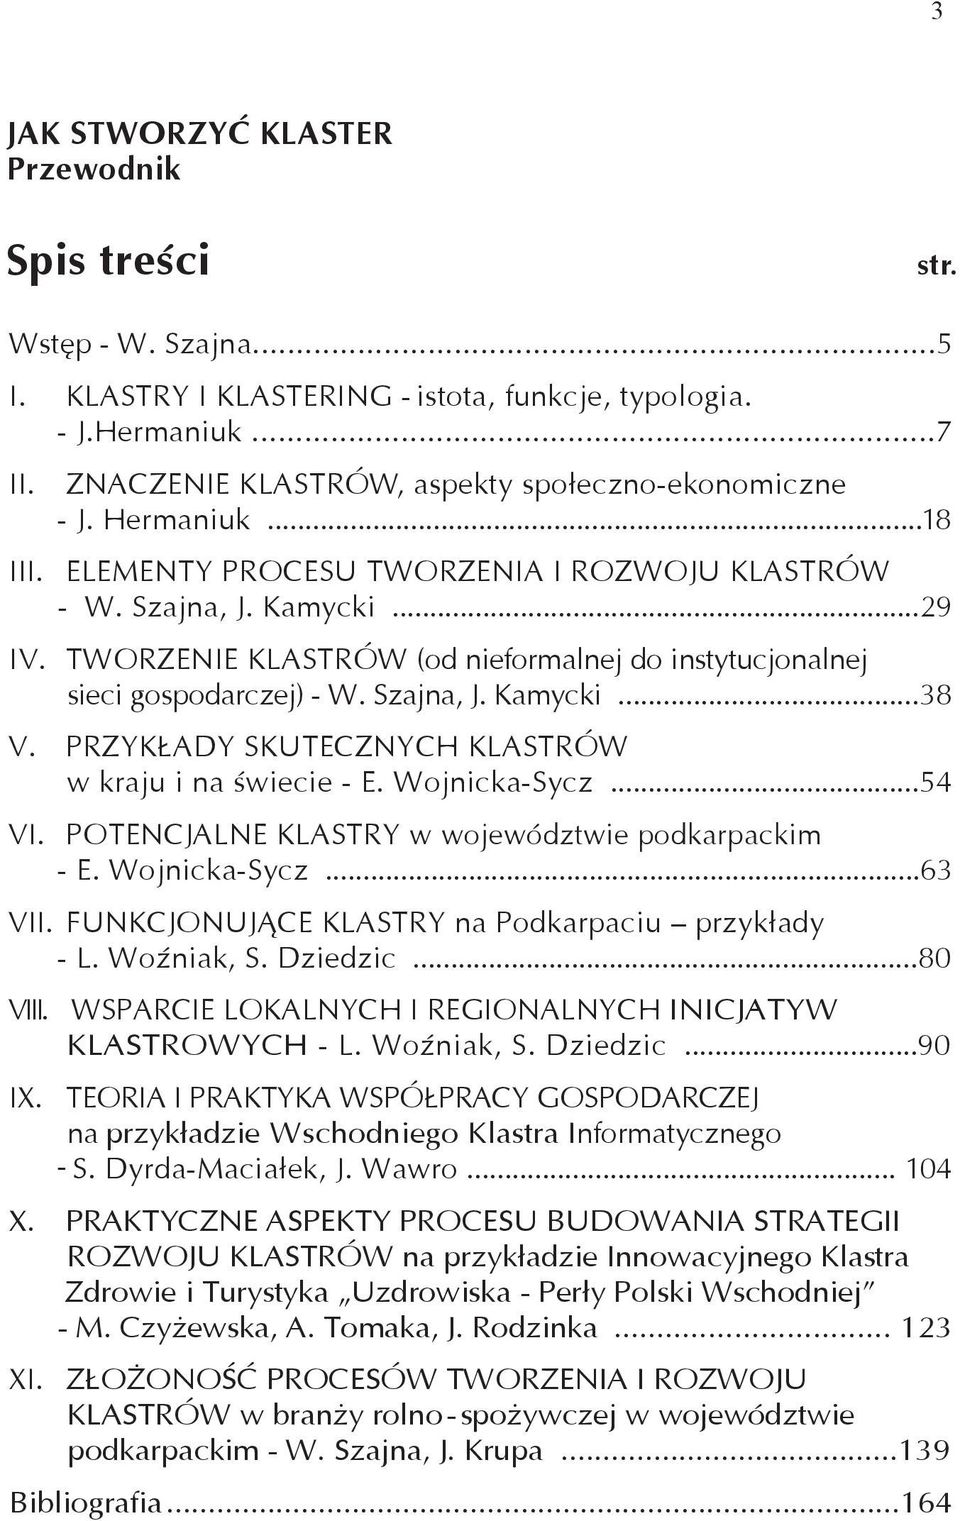 TWORZENIE KLASTRÓW (od nieformalnej do instytucjonalnej sieci gospodarczej) - W. Szajna, J. Kamycki...38 V. PRZYKŁADY SKUTECZNYCH KLASTRÓW w kraju i na świecie - E. Wojnicka-Sycz...54 VI.